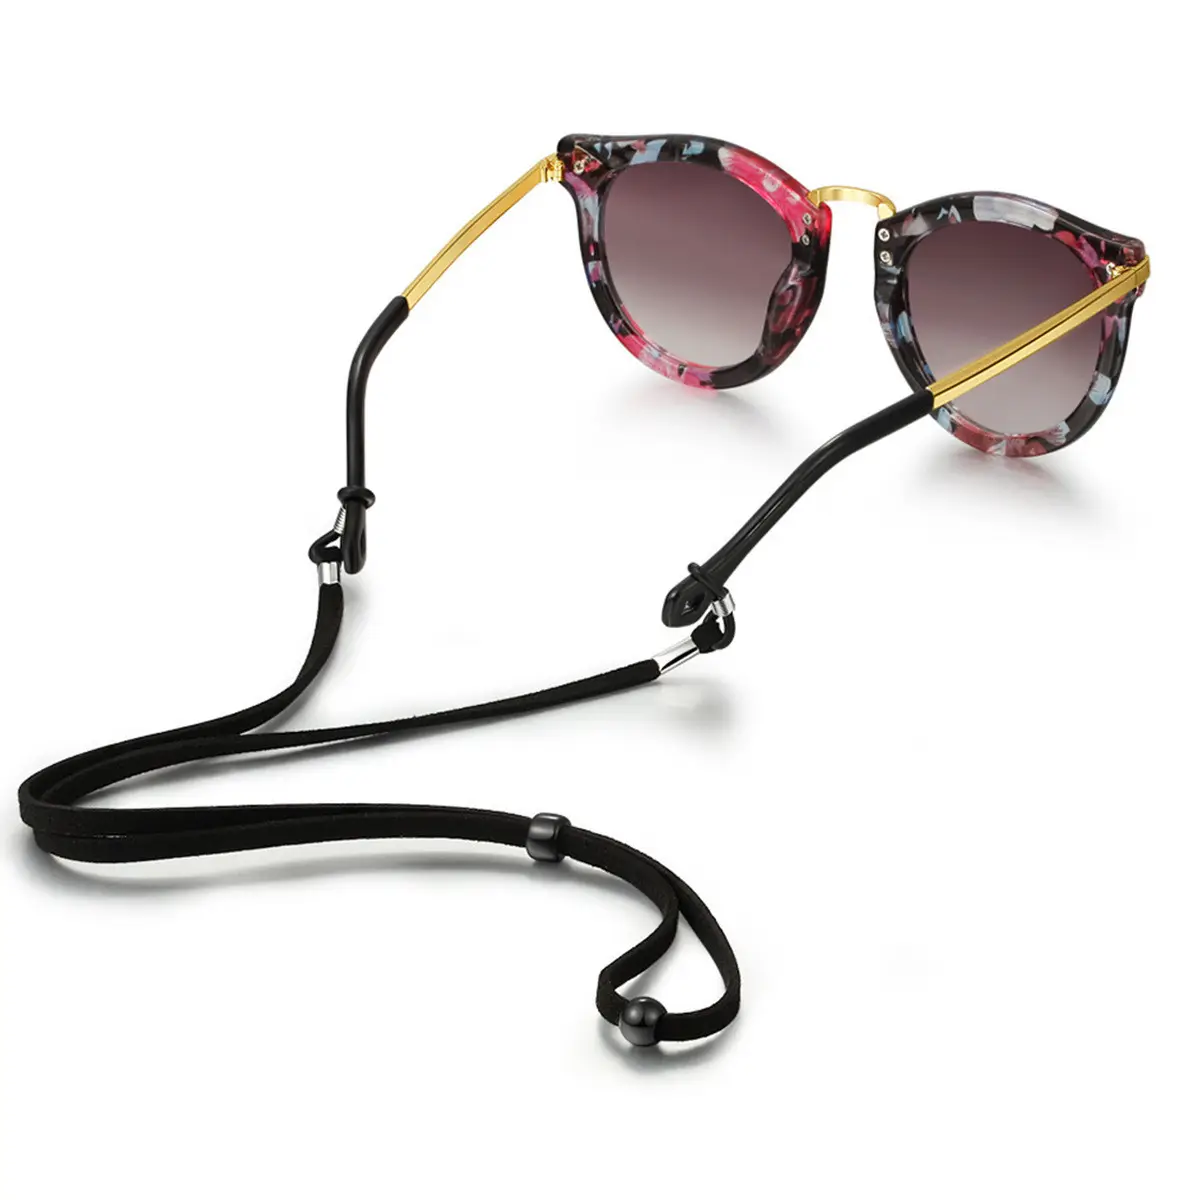 Correa de cordón para gafas de sol, cuerda de franela de ante, cadena ajustable deportiva, accesorios coloridos para gafas de sol